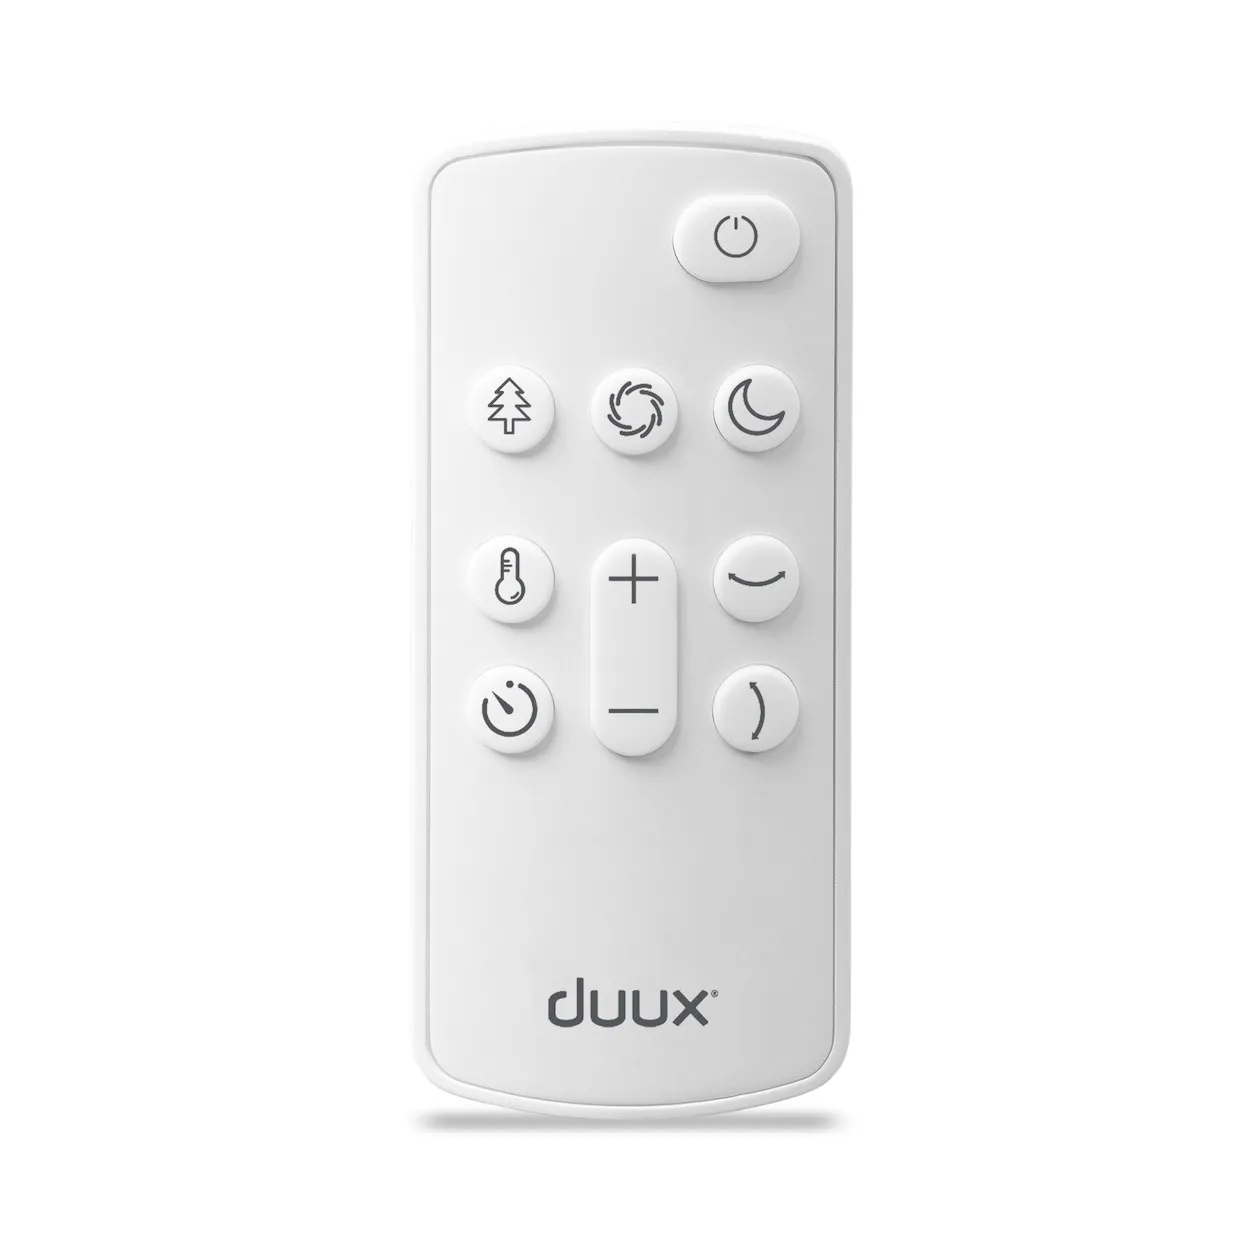 Duux DXCF15 Whisper Flex Ultimate Fan White incl Bat Wit